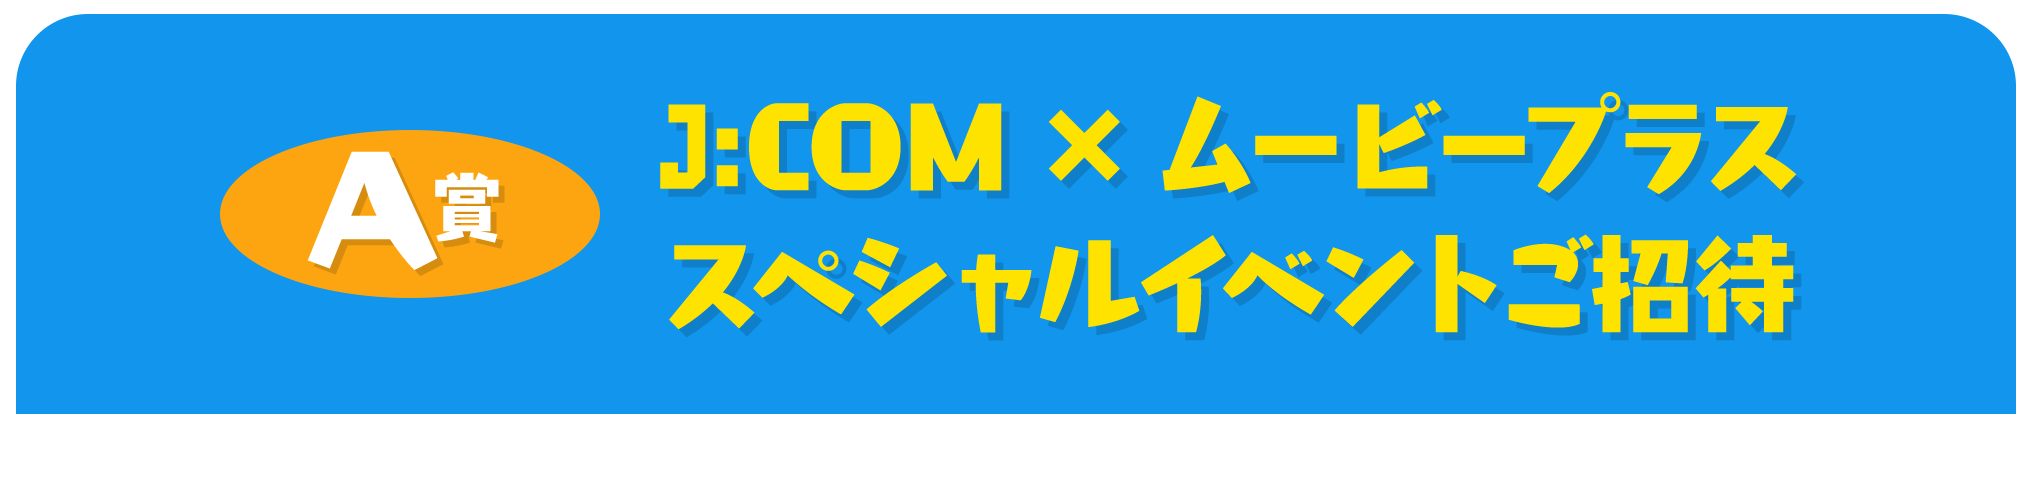 A賞 J:COM×ムービープラス スペシャルイベントご招待